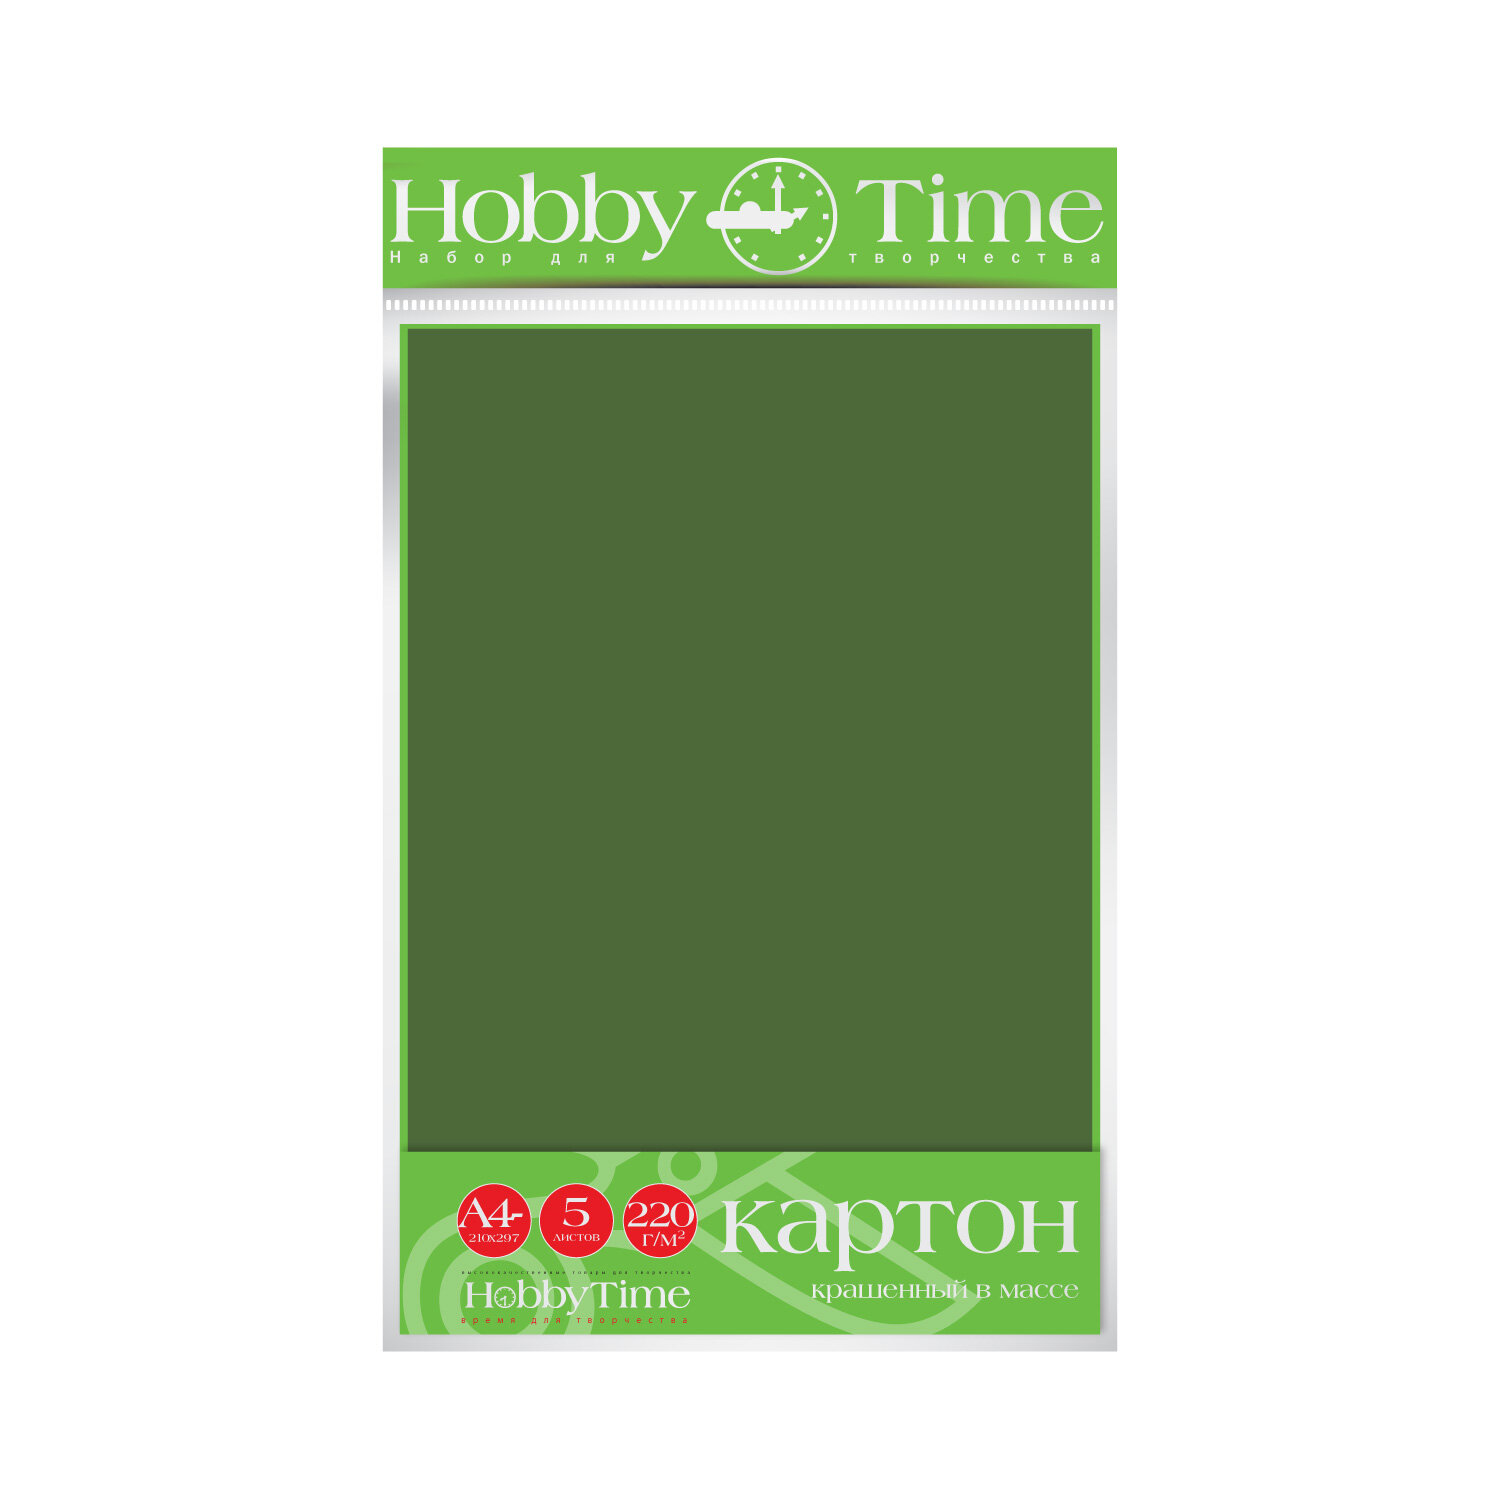 Набор цветного картона HOBBY TIME, А4 (222 х 352 мм), 5 листов, крашенный в массе, темно-зеленый, Арт : 2-063/06